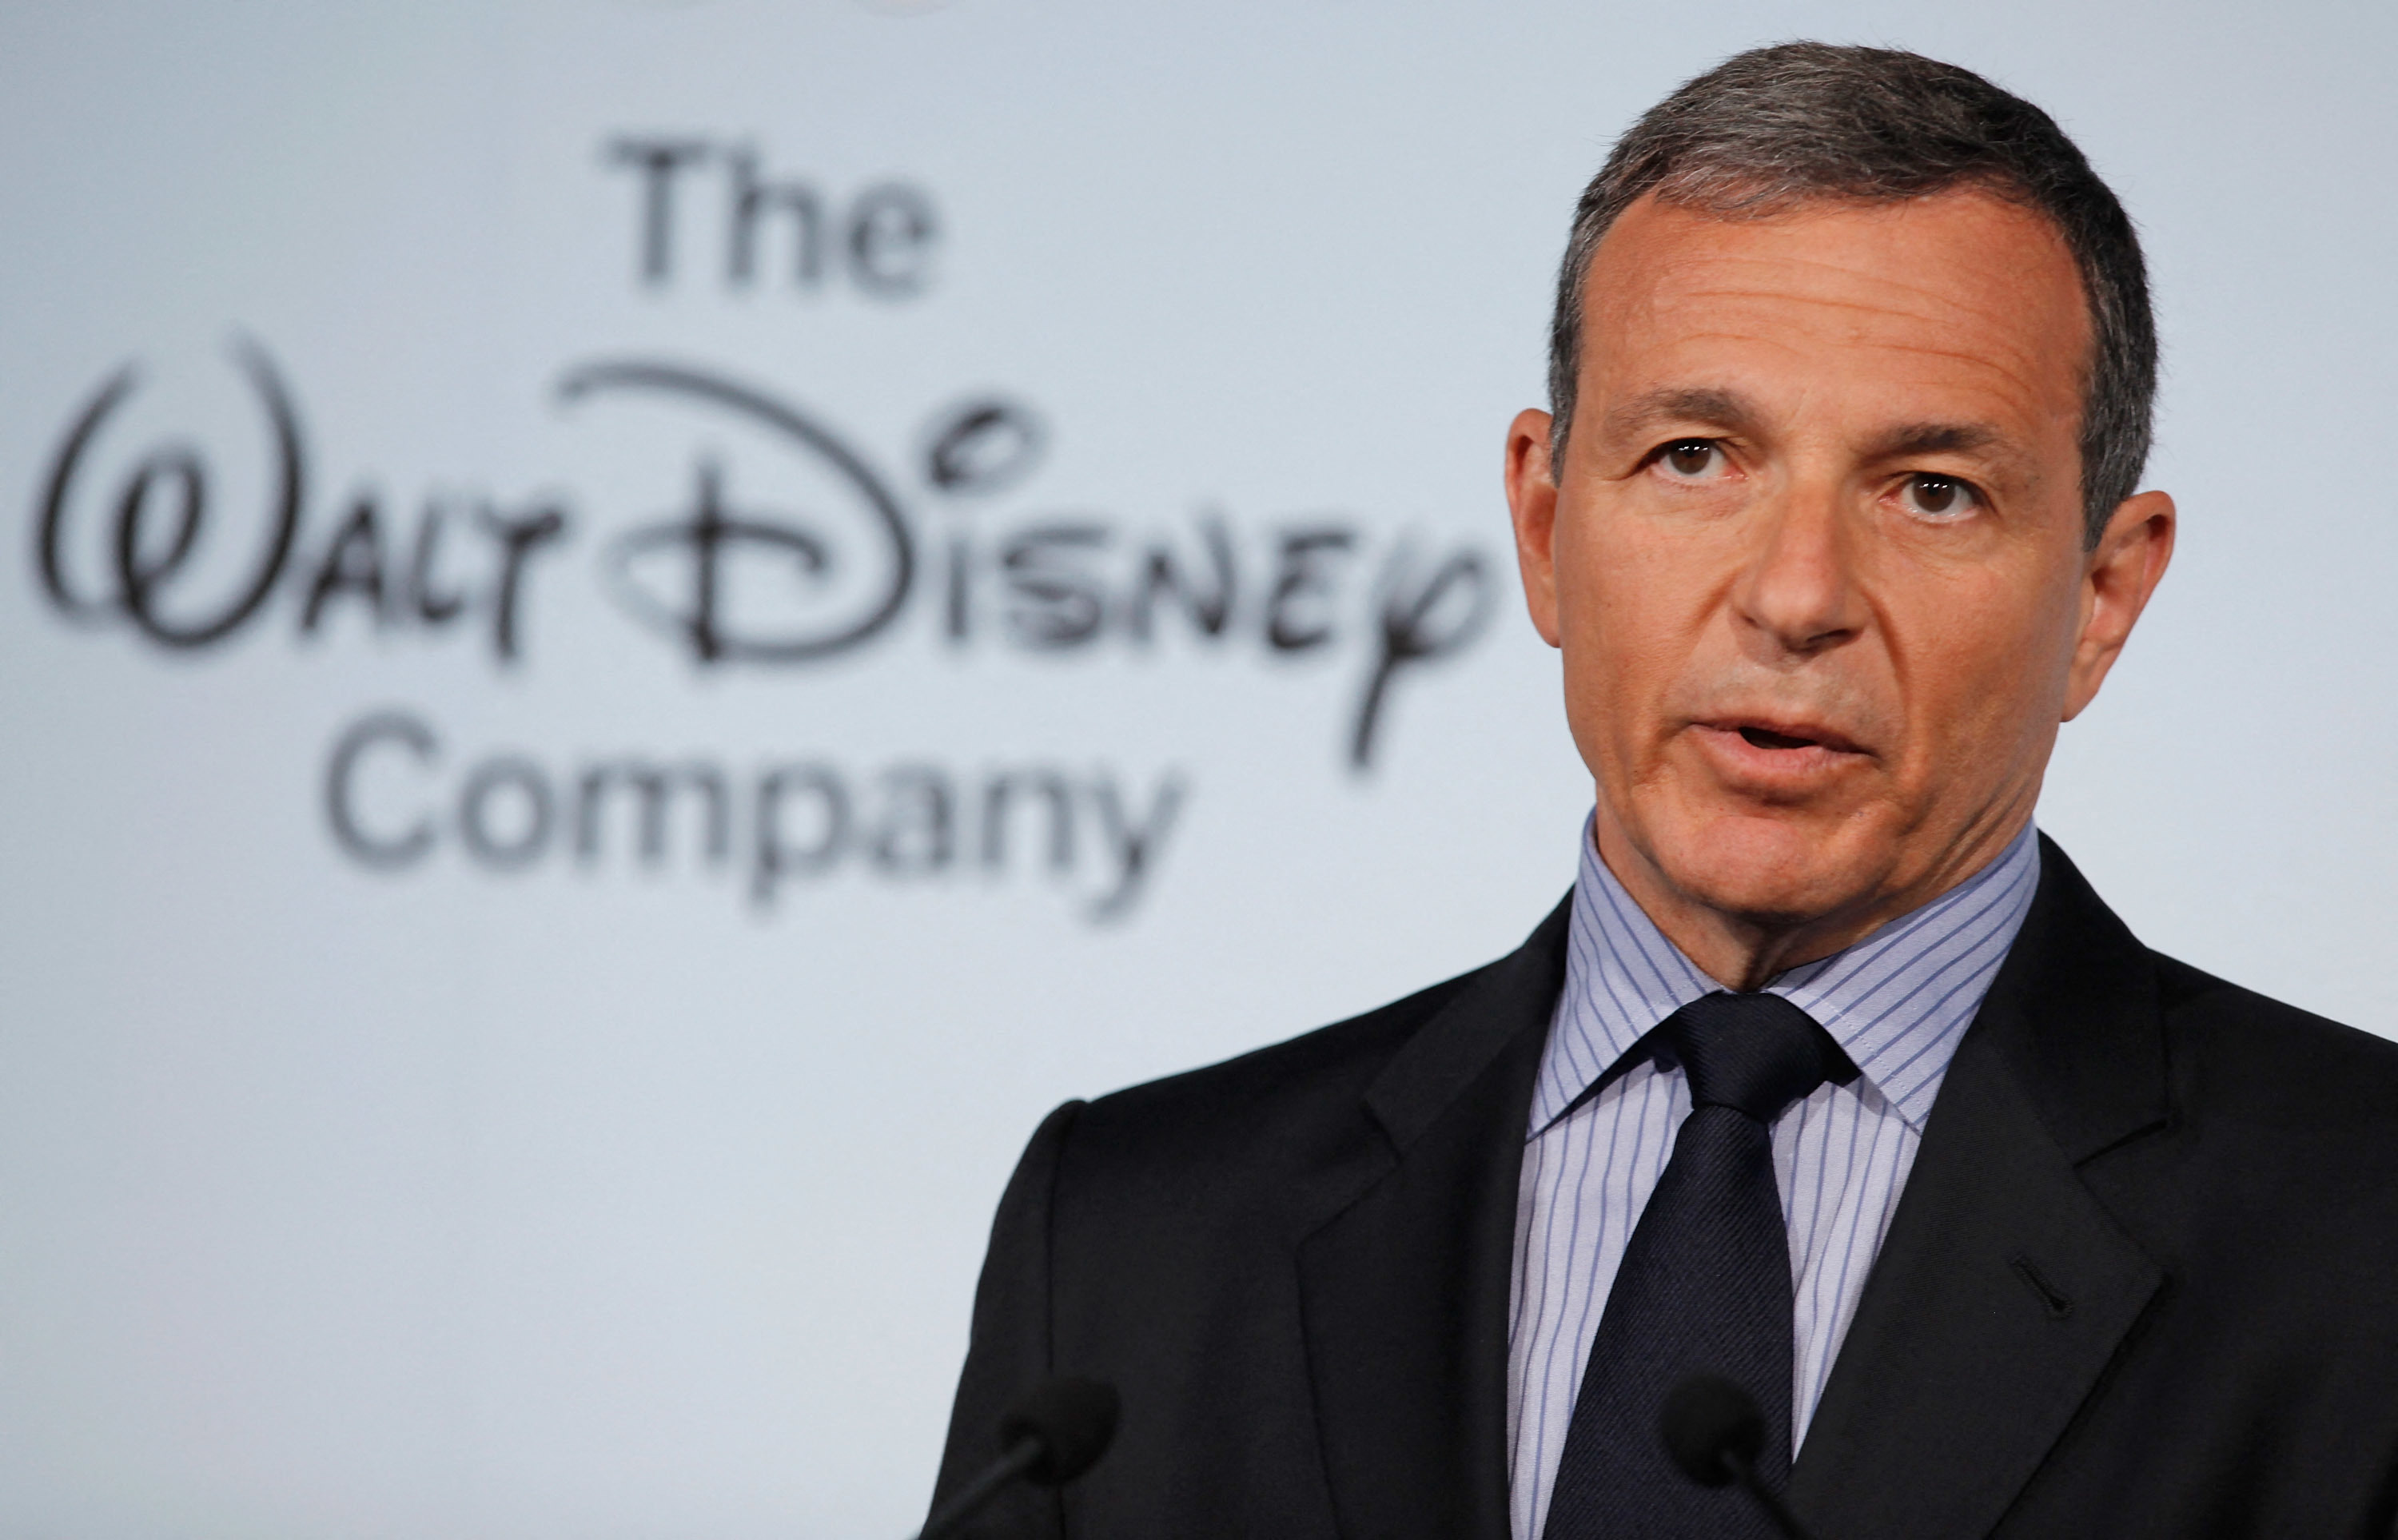 Disney se dispara casi un 10% en Wall Street tras el retorno de Bob Iger